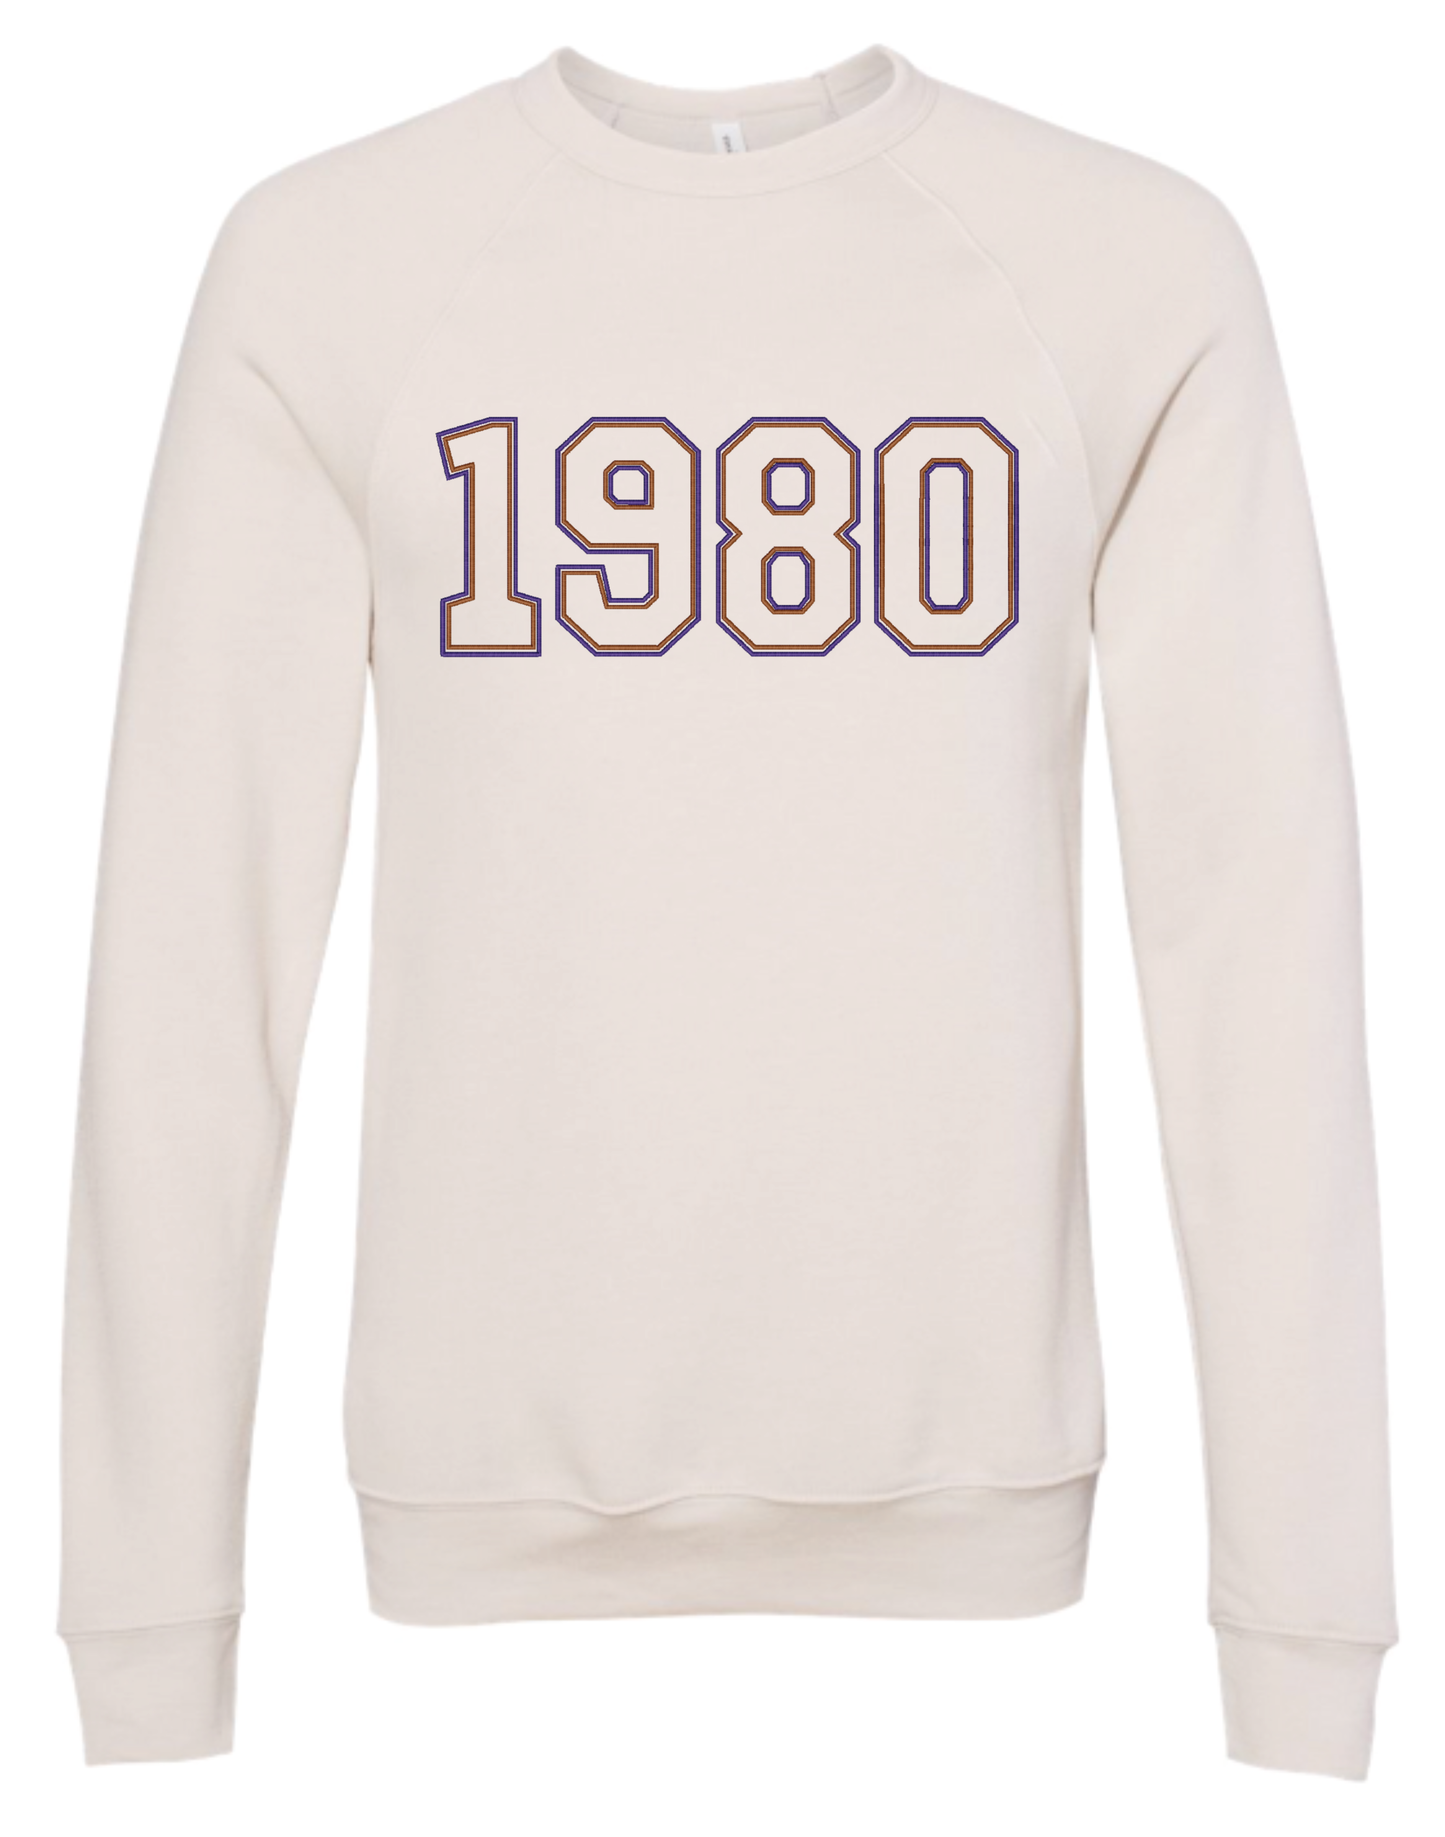 1980 Embroidered Sweatshirt